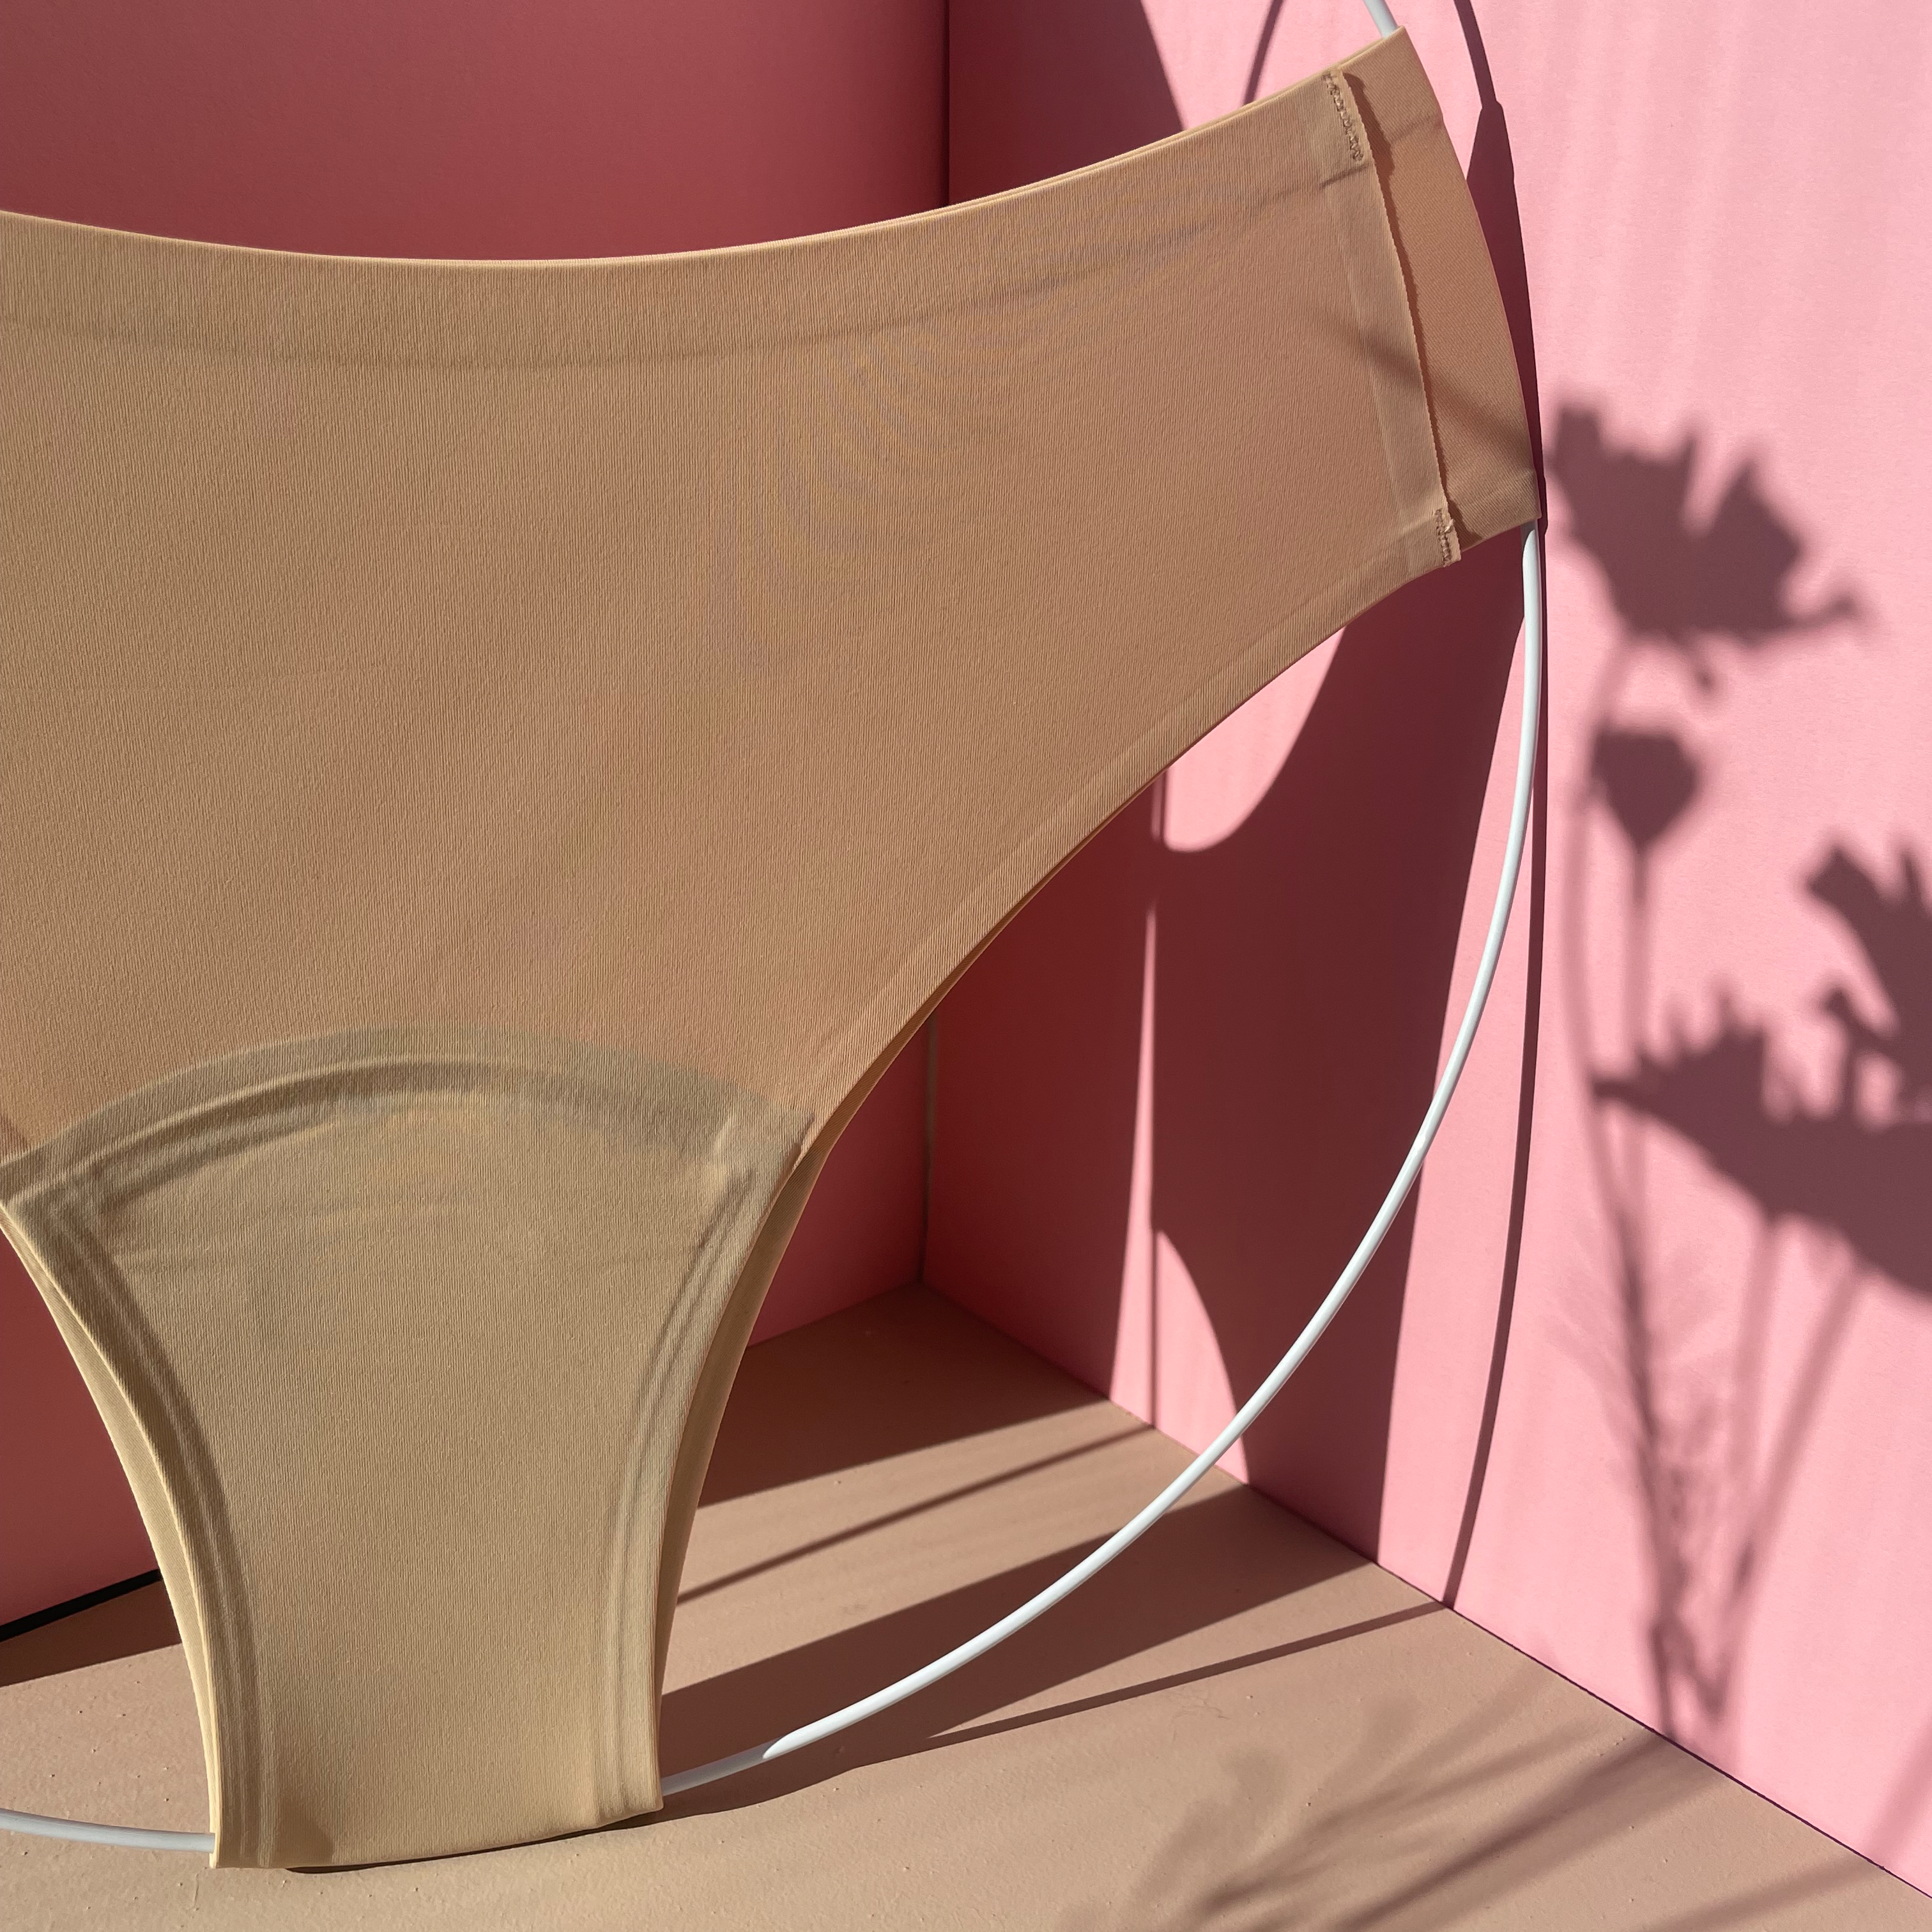 dais Period Underwear | Cheeky | Black